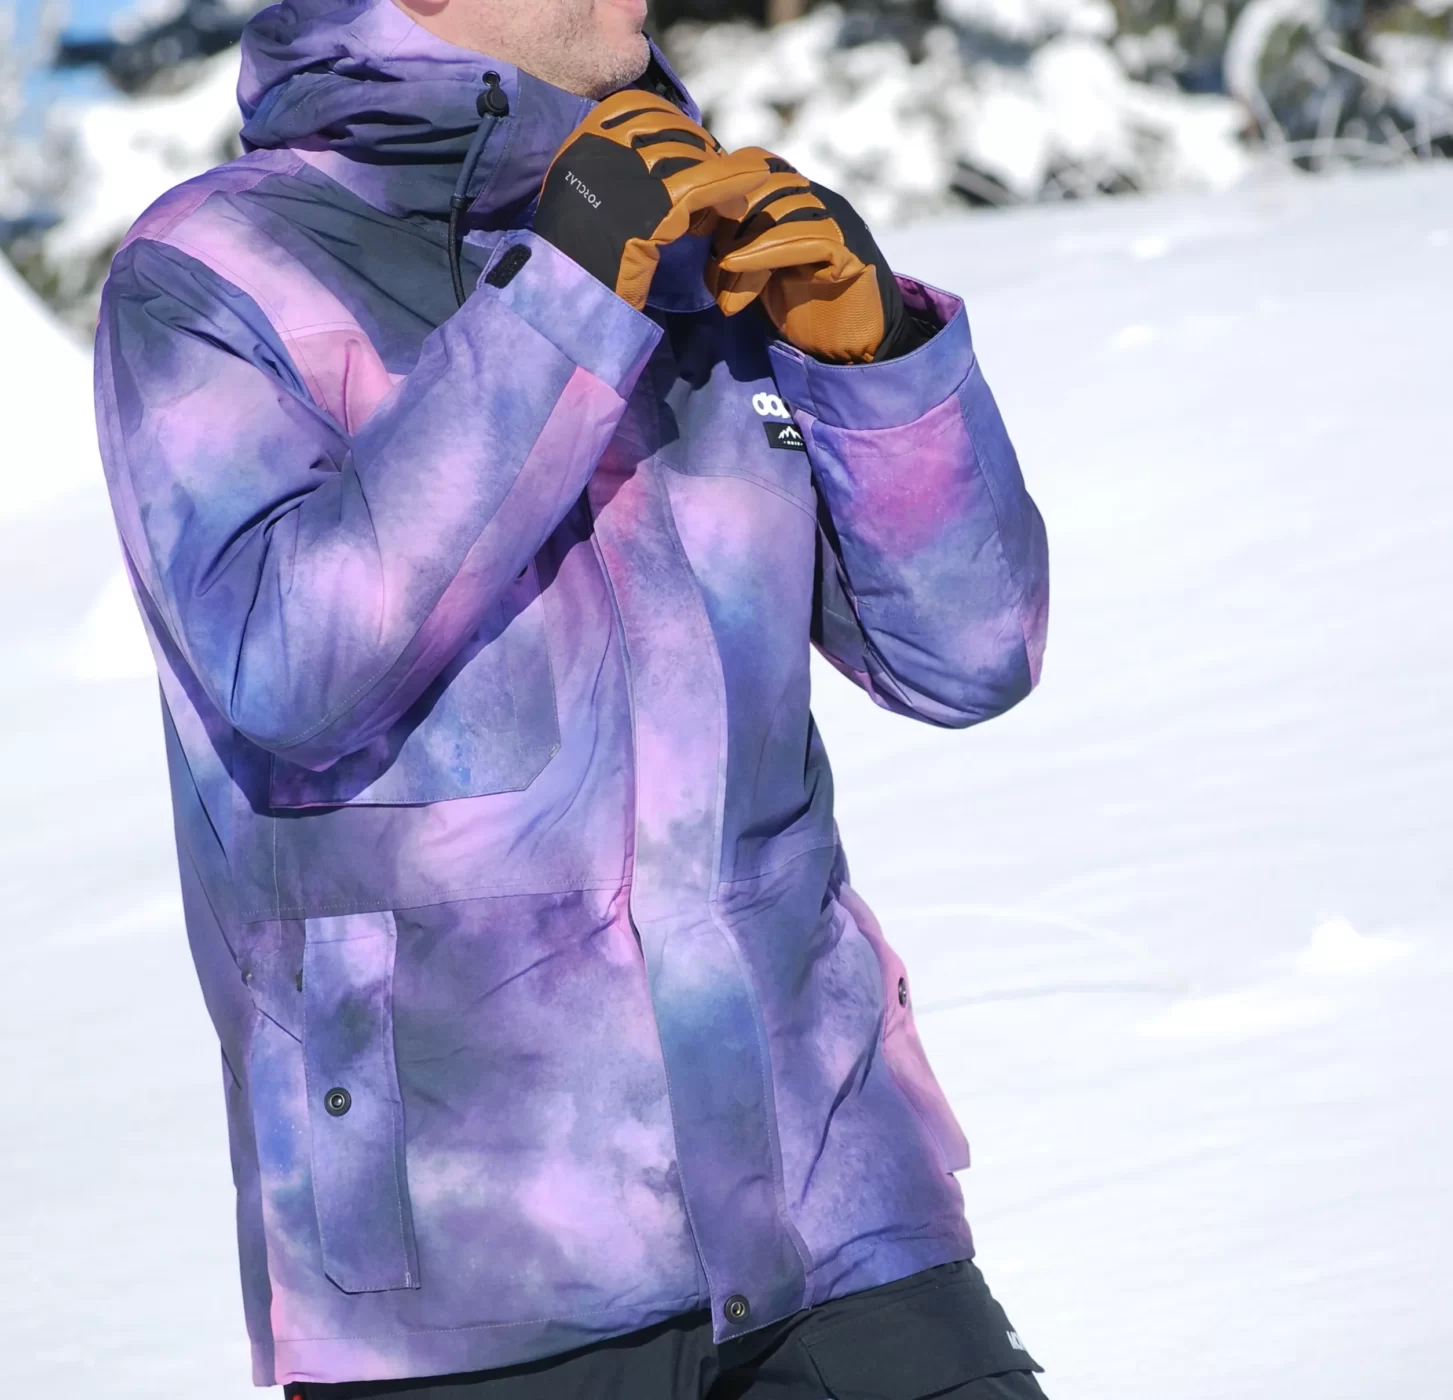 Le skieur porte la veste avec ces bras au niveau de la capuche.